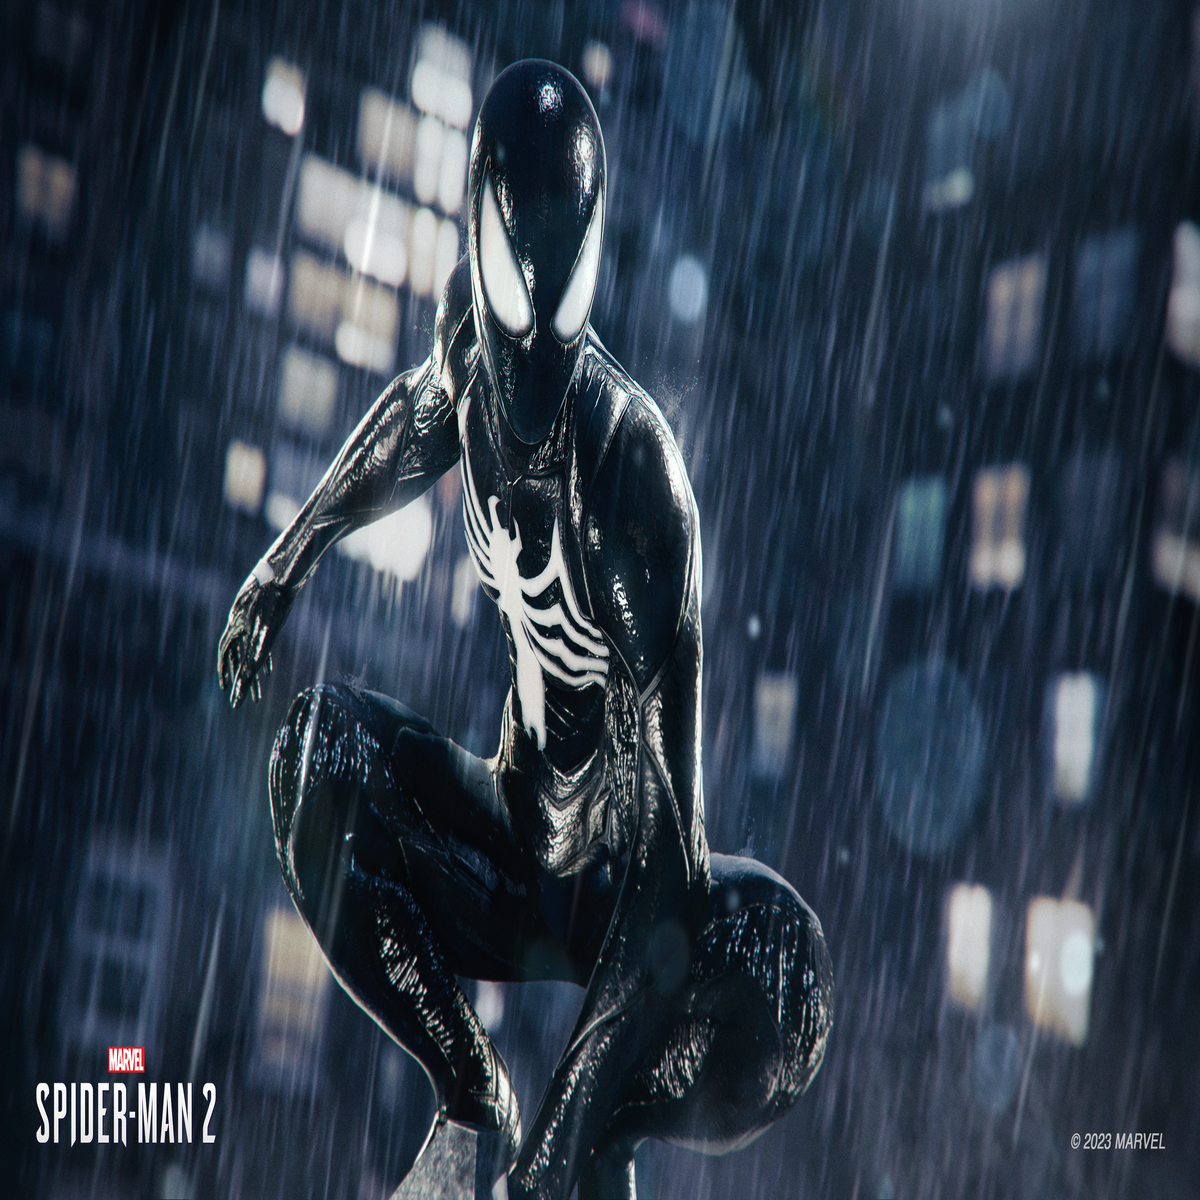 Marvel Legends Spider-Man 2 Peter Parker & Miles Morales Review! 